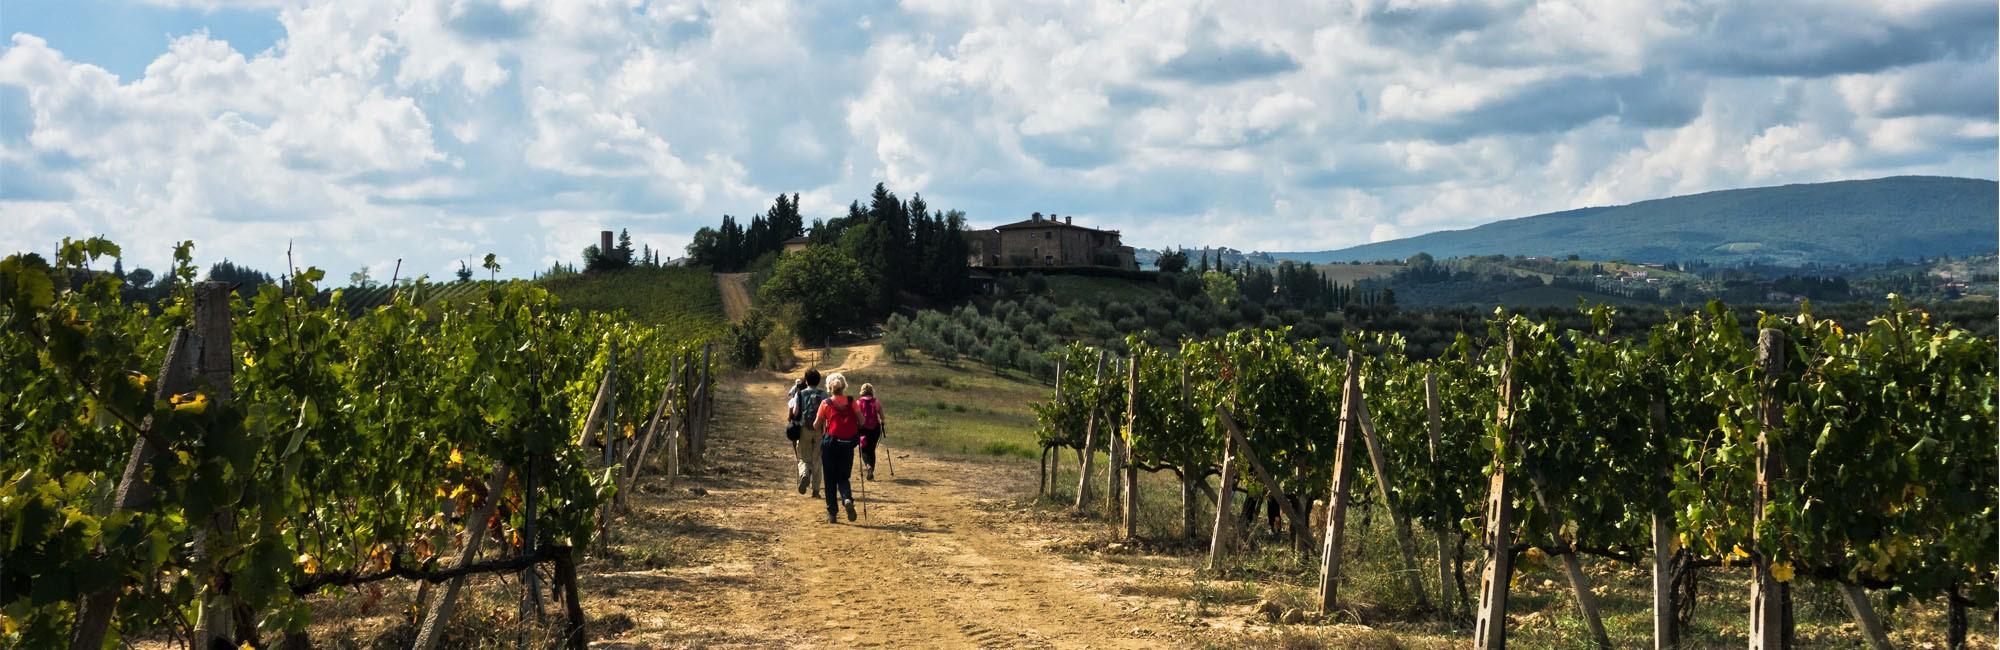 Tourist walking among vinyards